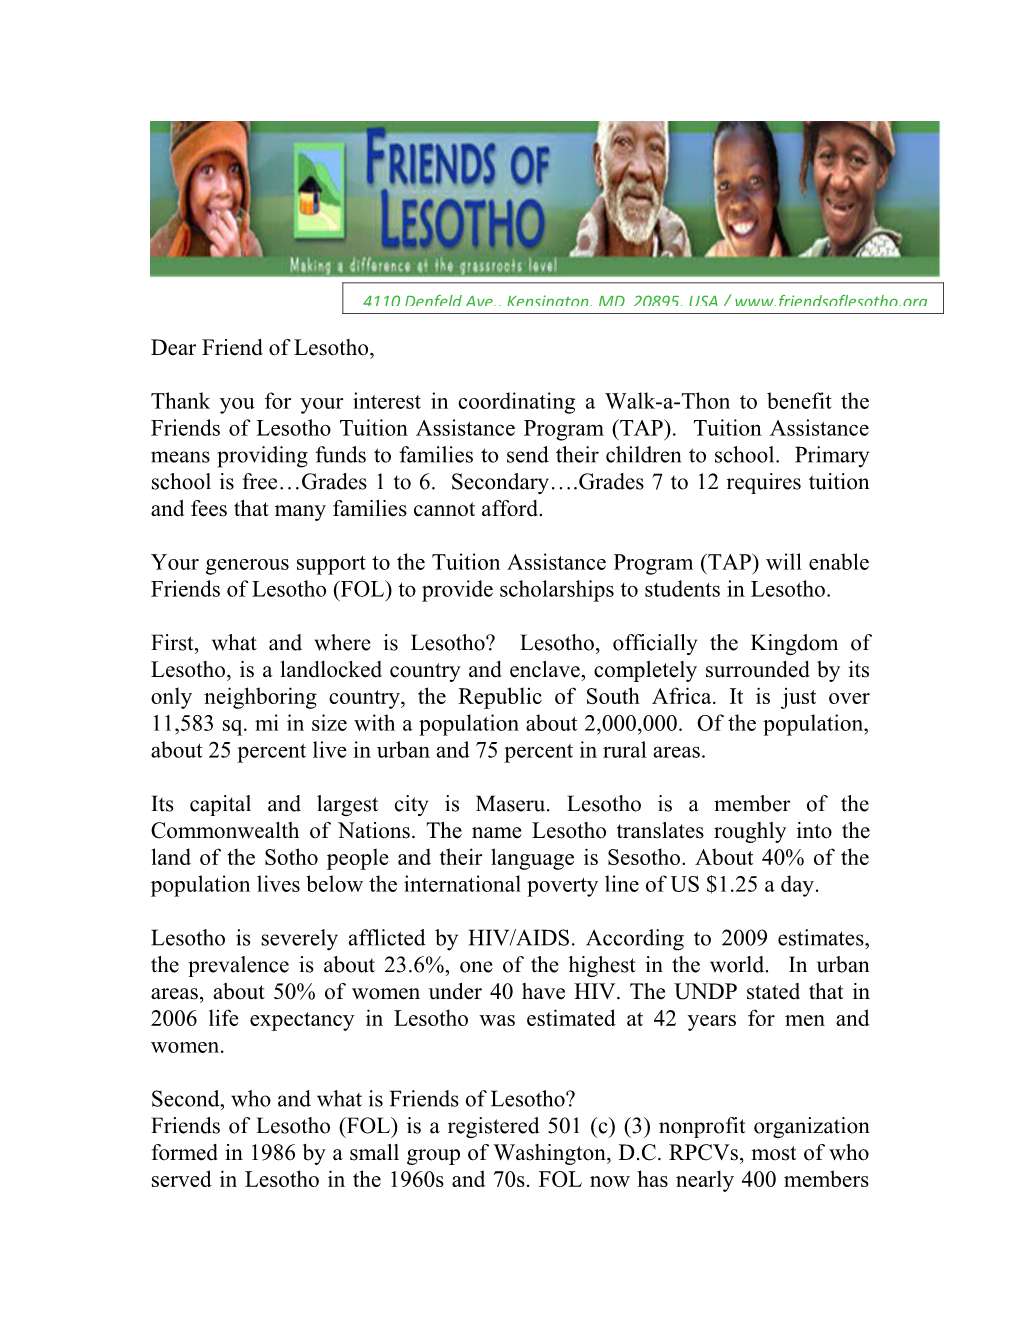 Dear Friend of Lesotho